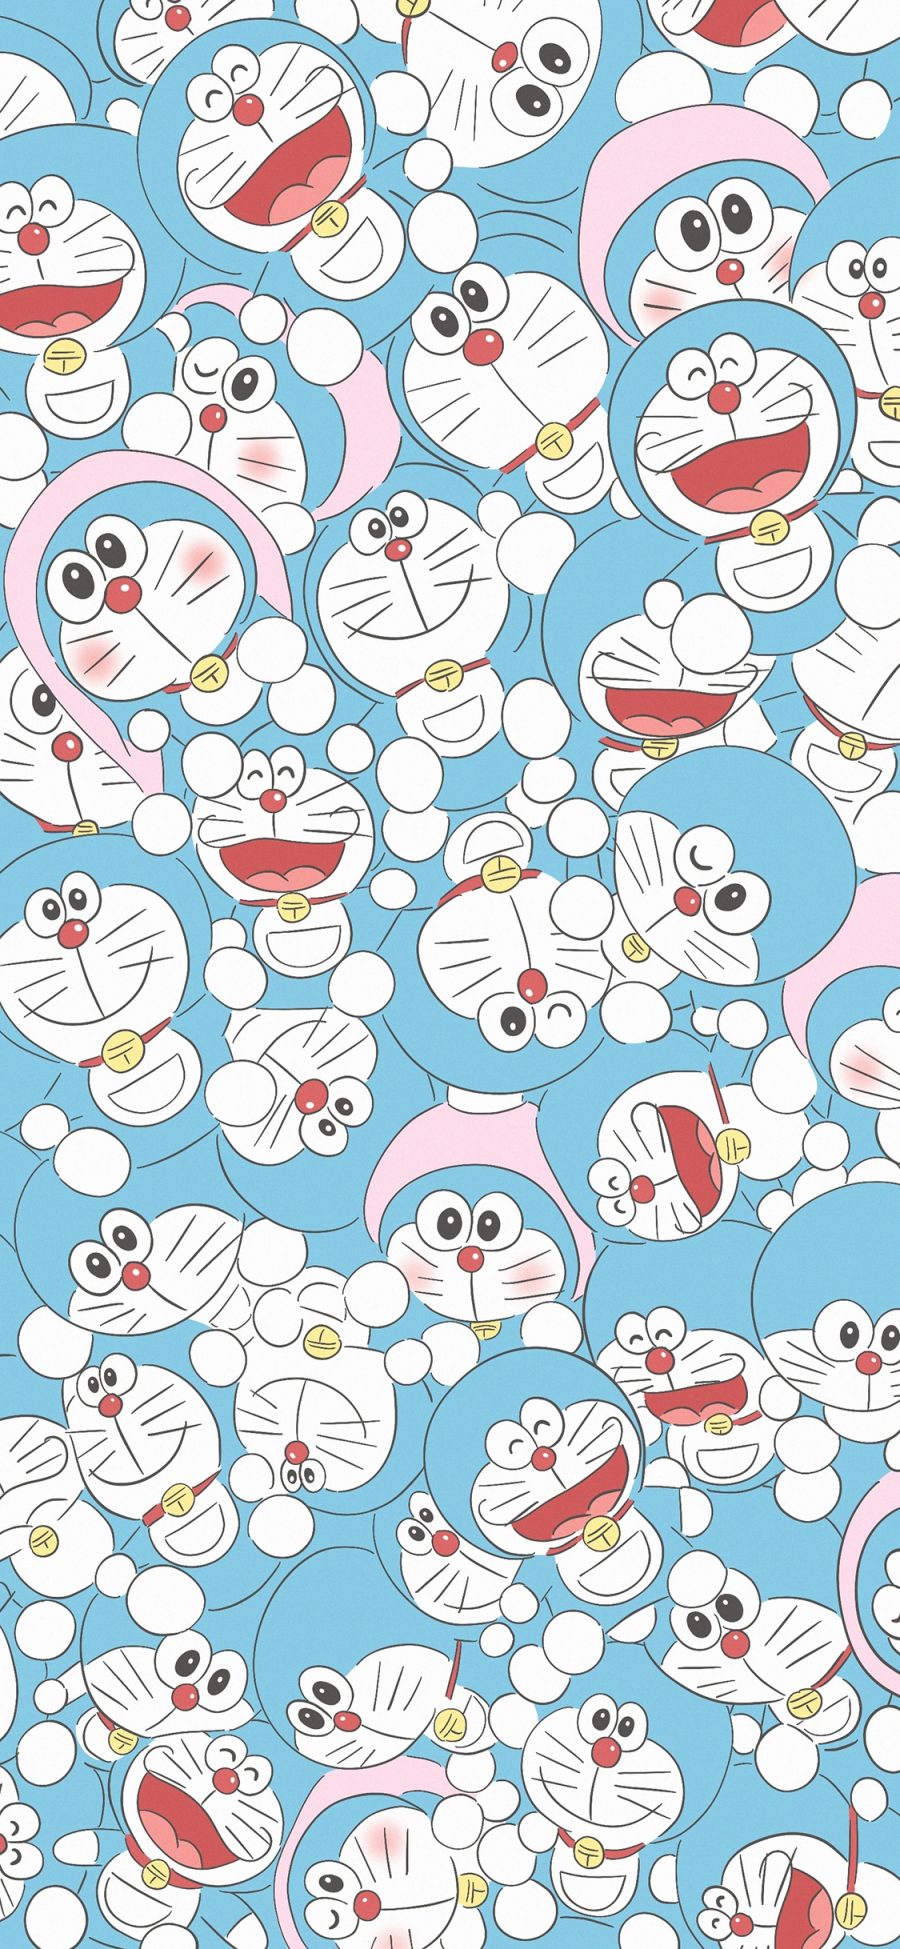 [2436×1125]哆啦A梦 叮当猫 漫画 日本 密集 苹果手机动漫壁纸图片